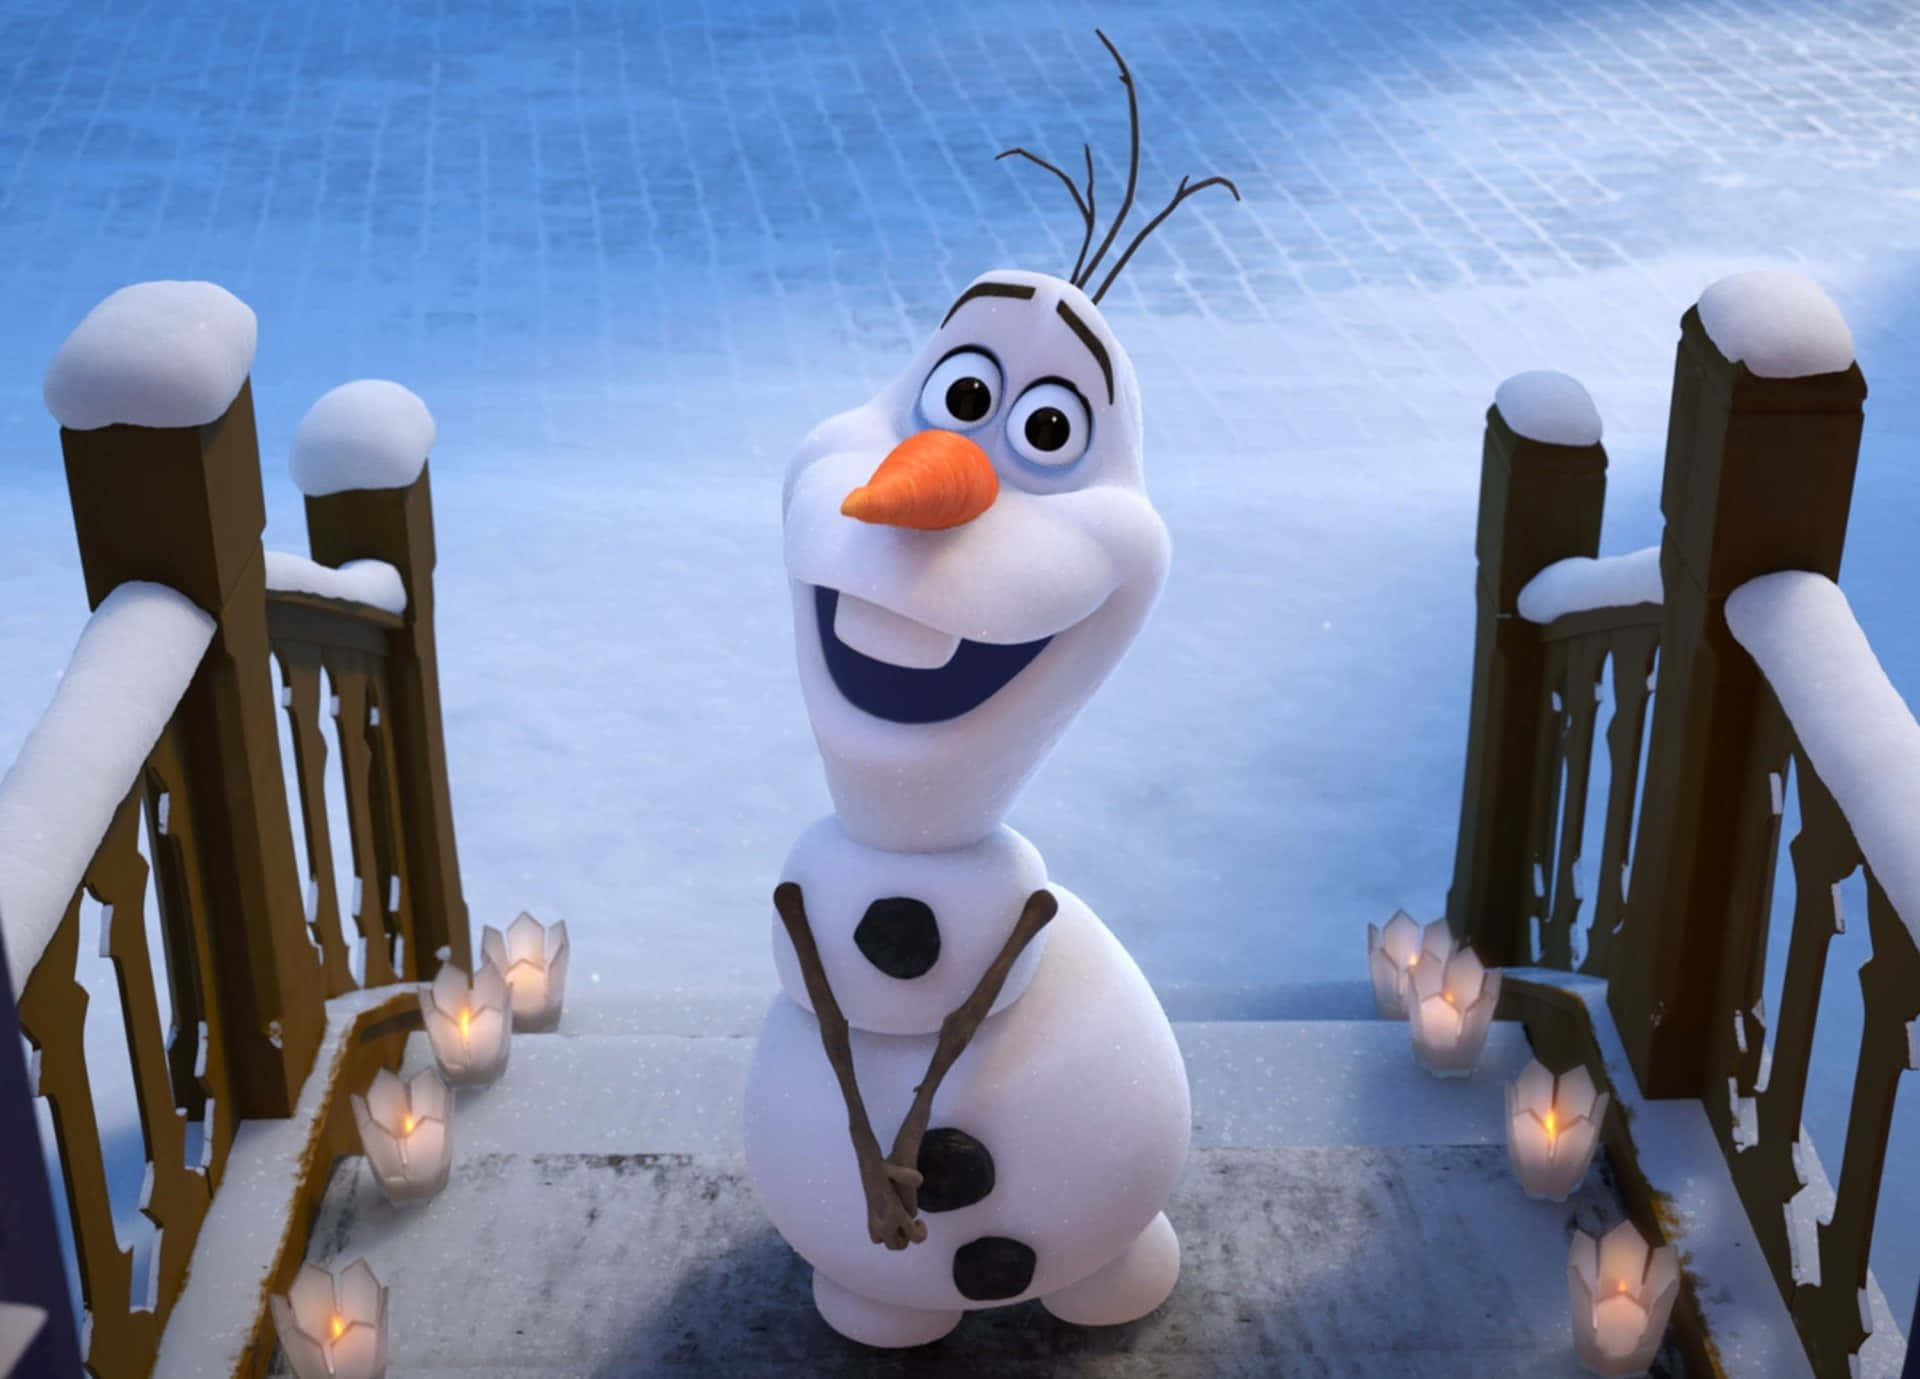 Lashermanas Anna Y Elsa De La Película Frozen Disfrutando De Un Día De Nieve.